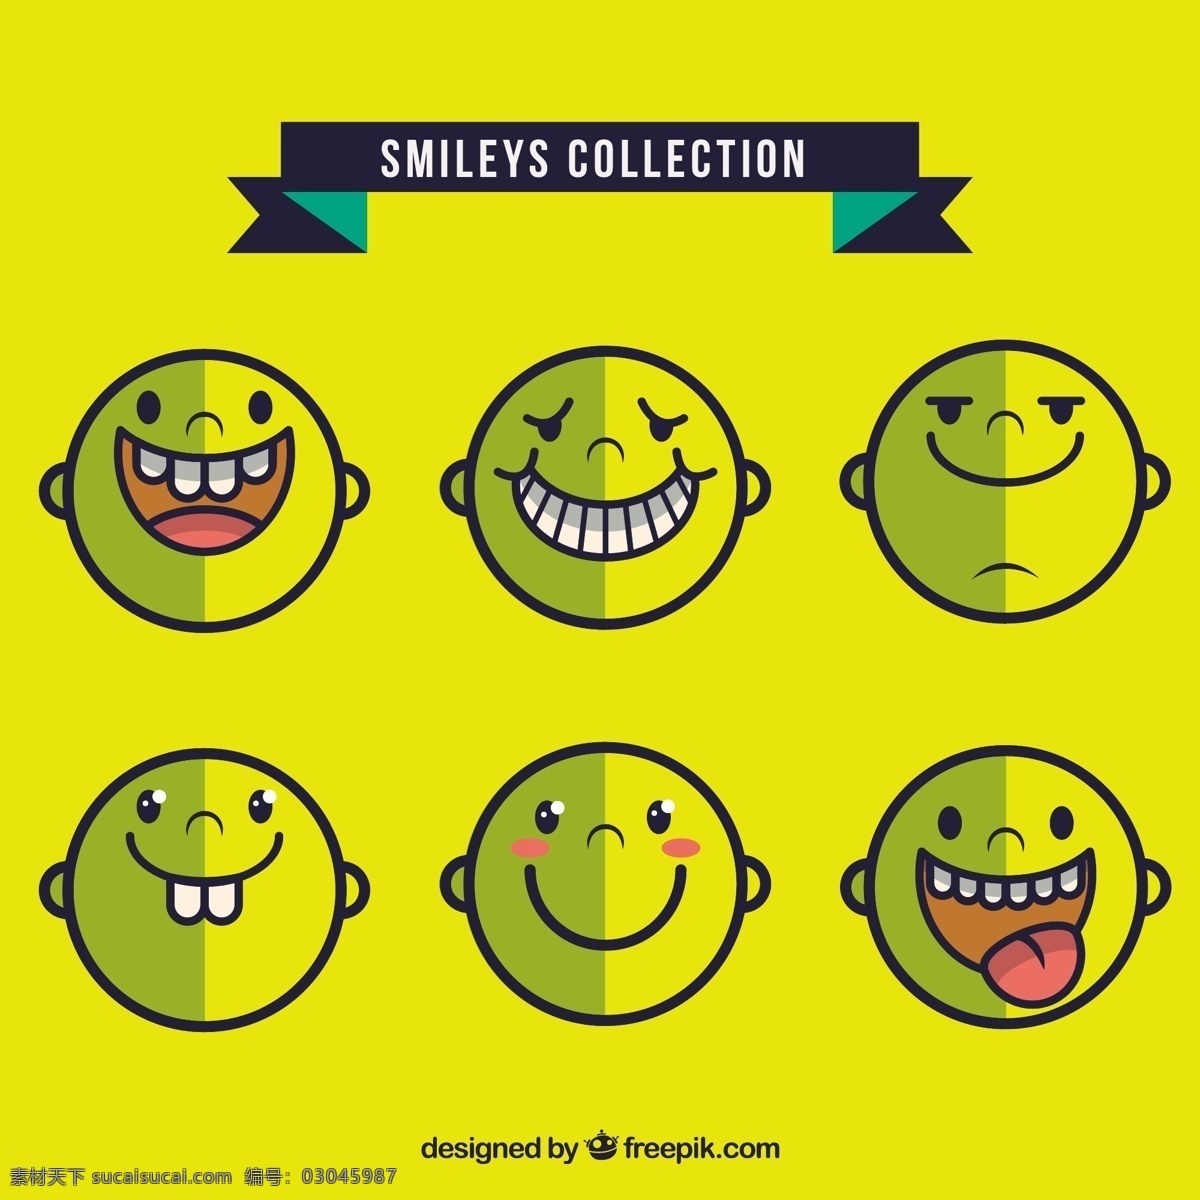 挑逗笑脸征集 孩子 脸 可爱 微笑 快乐 黄色 笑脸 有趣 情感 表情 快乐的脸 笑 收集 挑逗